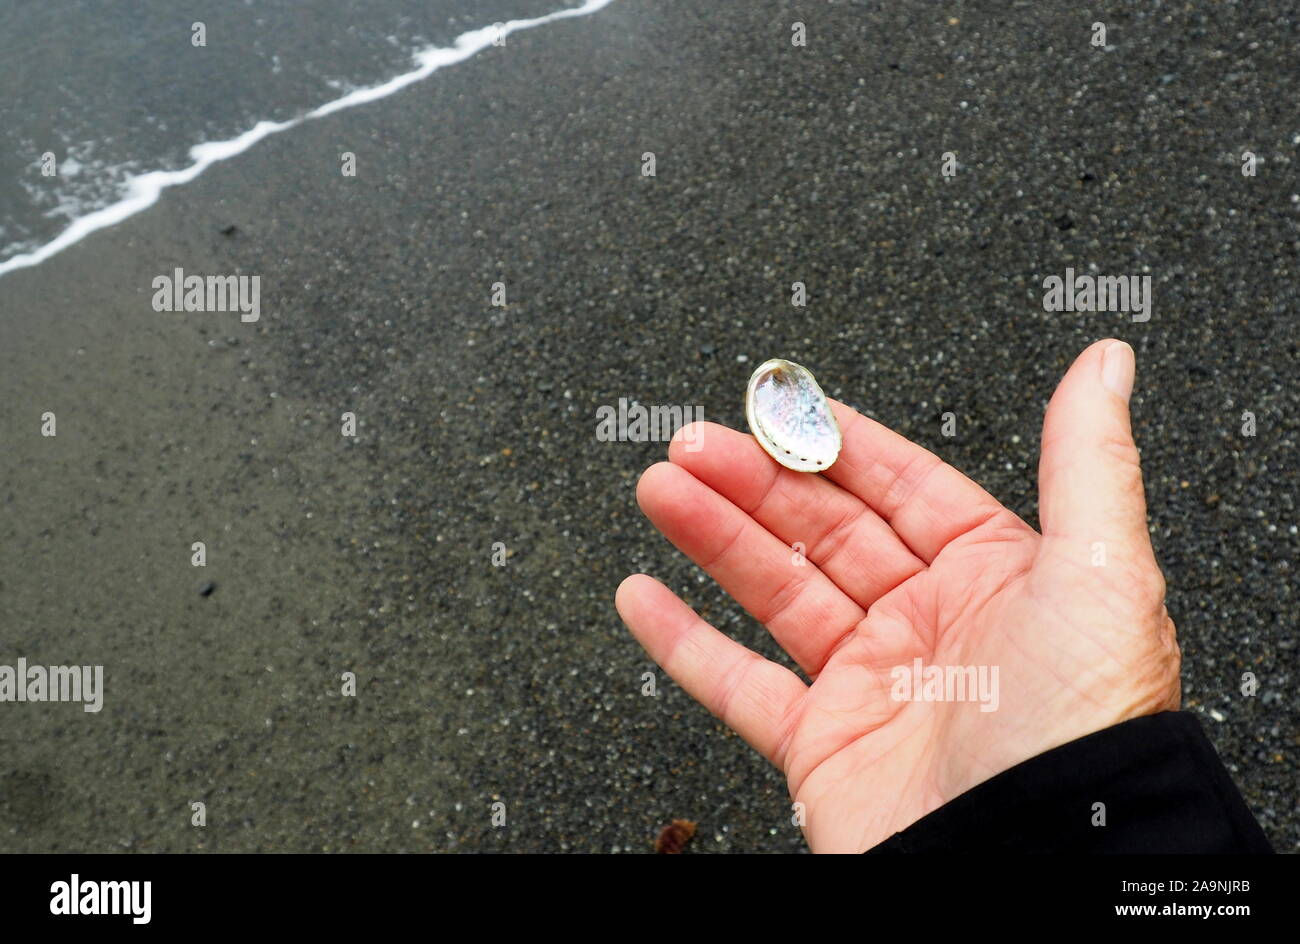 A tiny paua (abalone) shell, held on a New Zealand beach Stock Photo